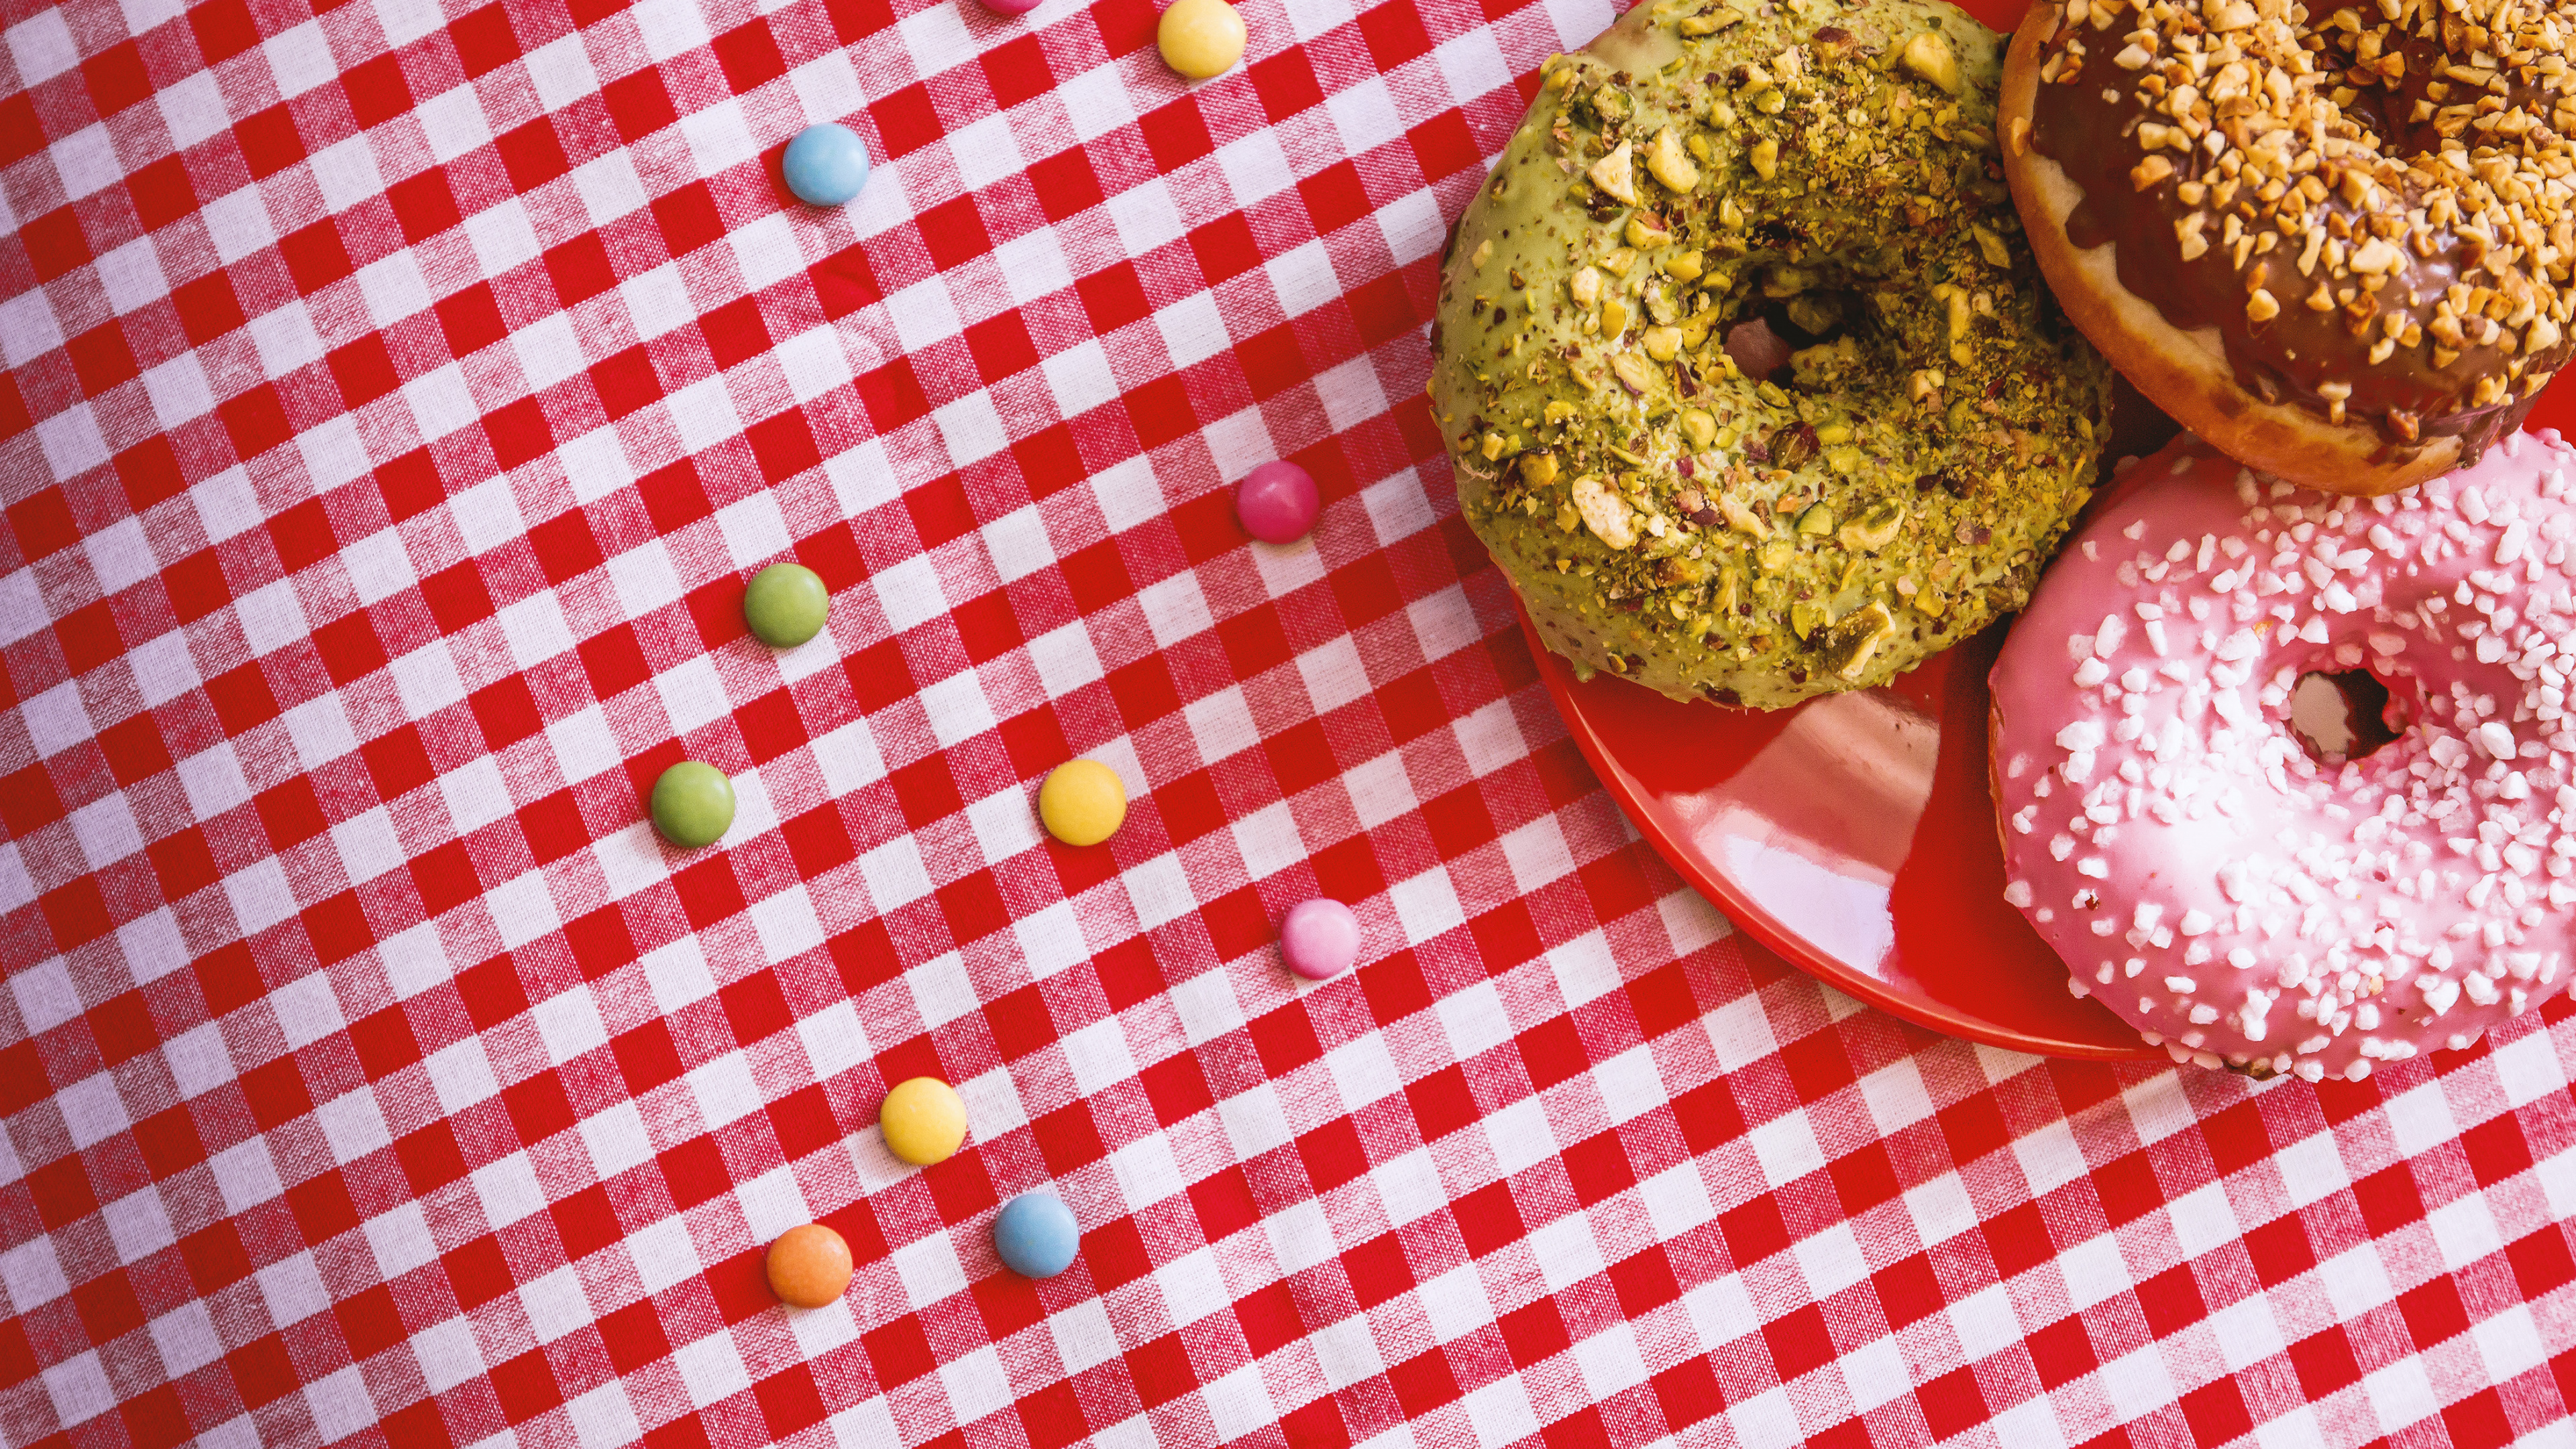 Brauner Donut Auf Rot-weiß Karierter Tischdecke. Wallpaper in 3840x2160 Resolution